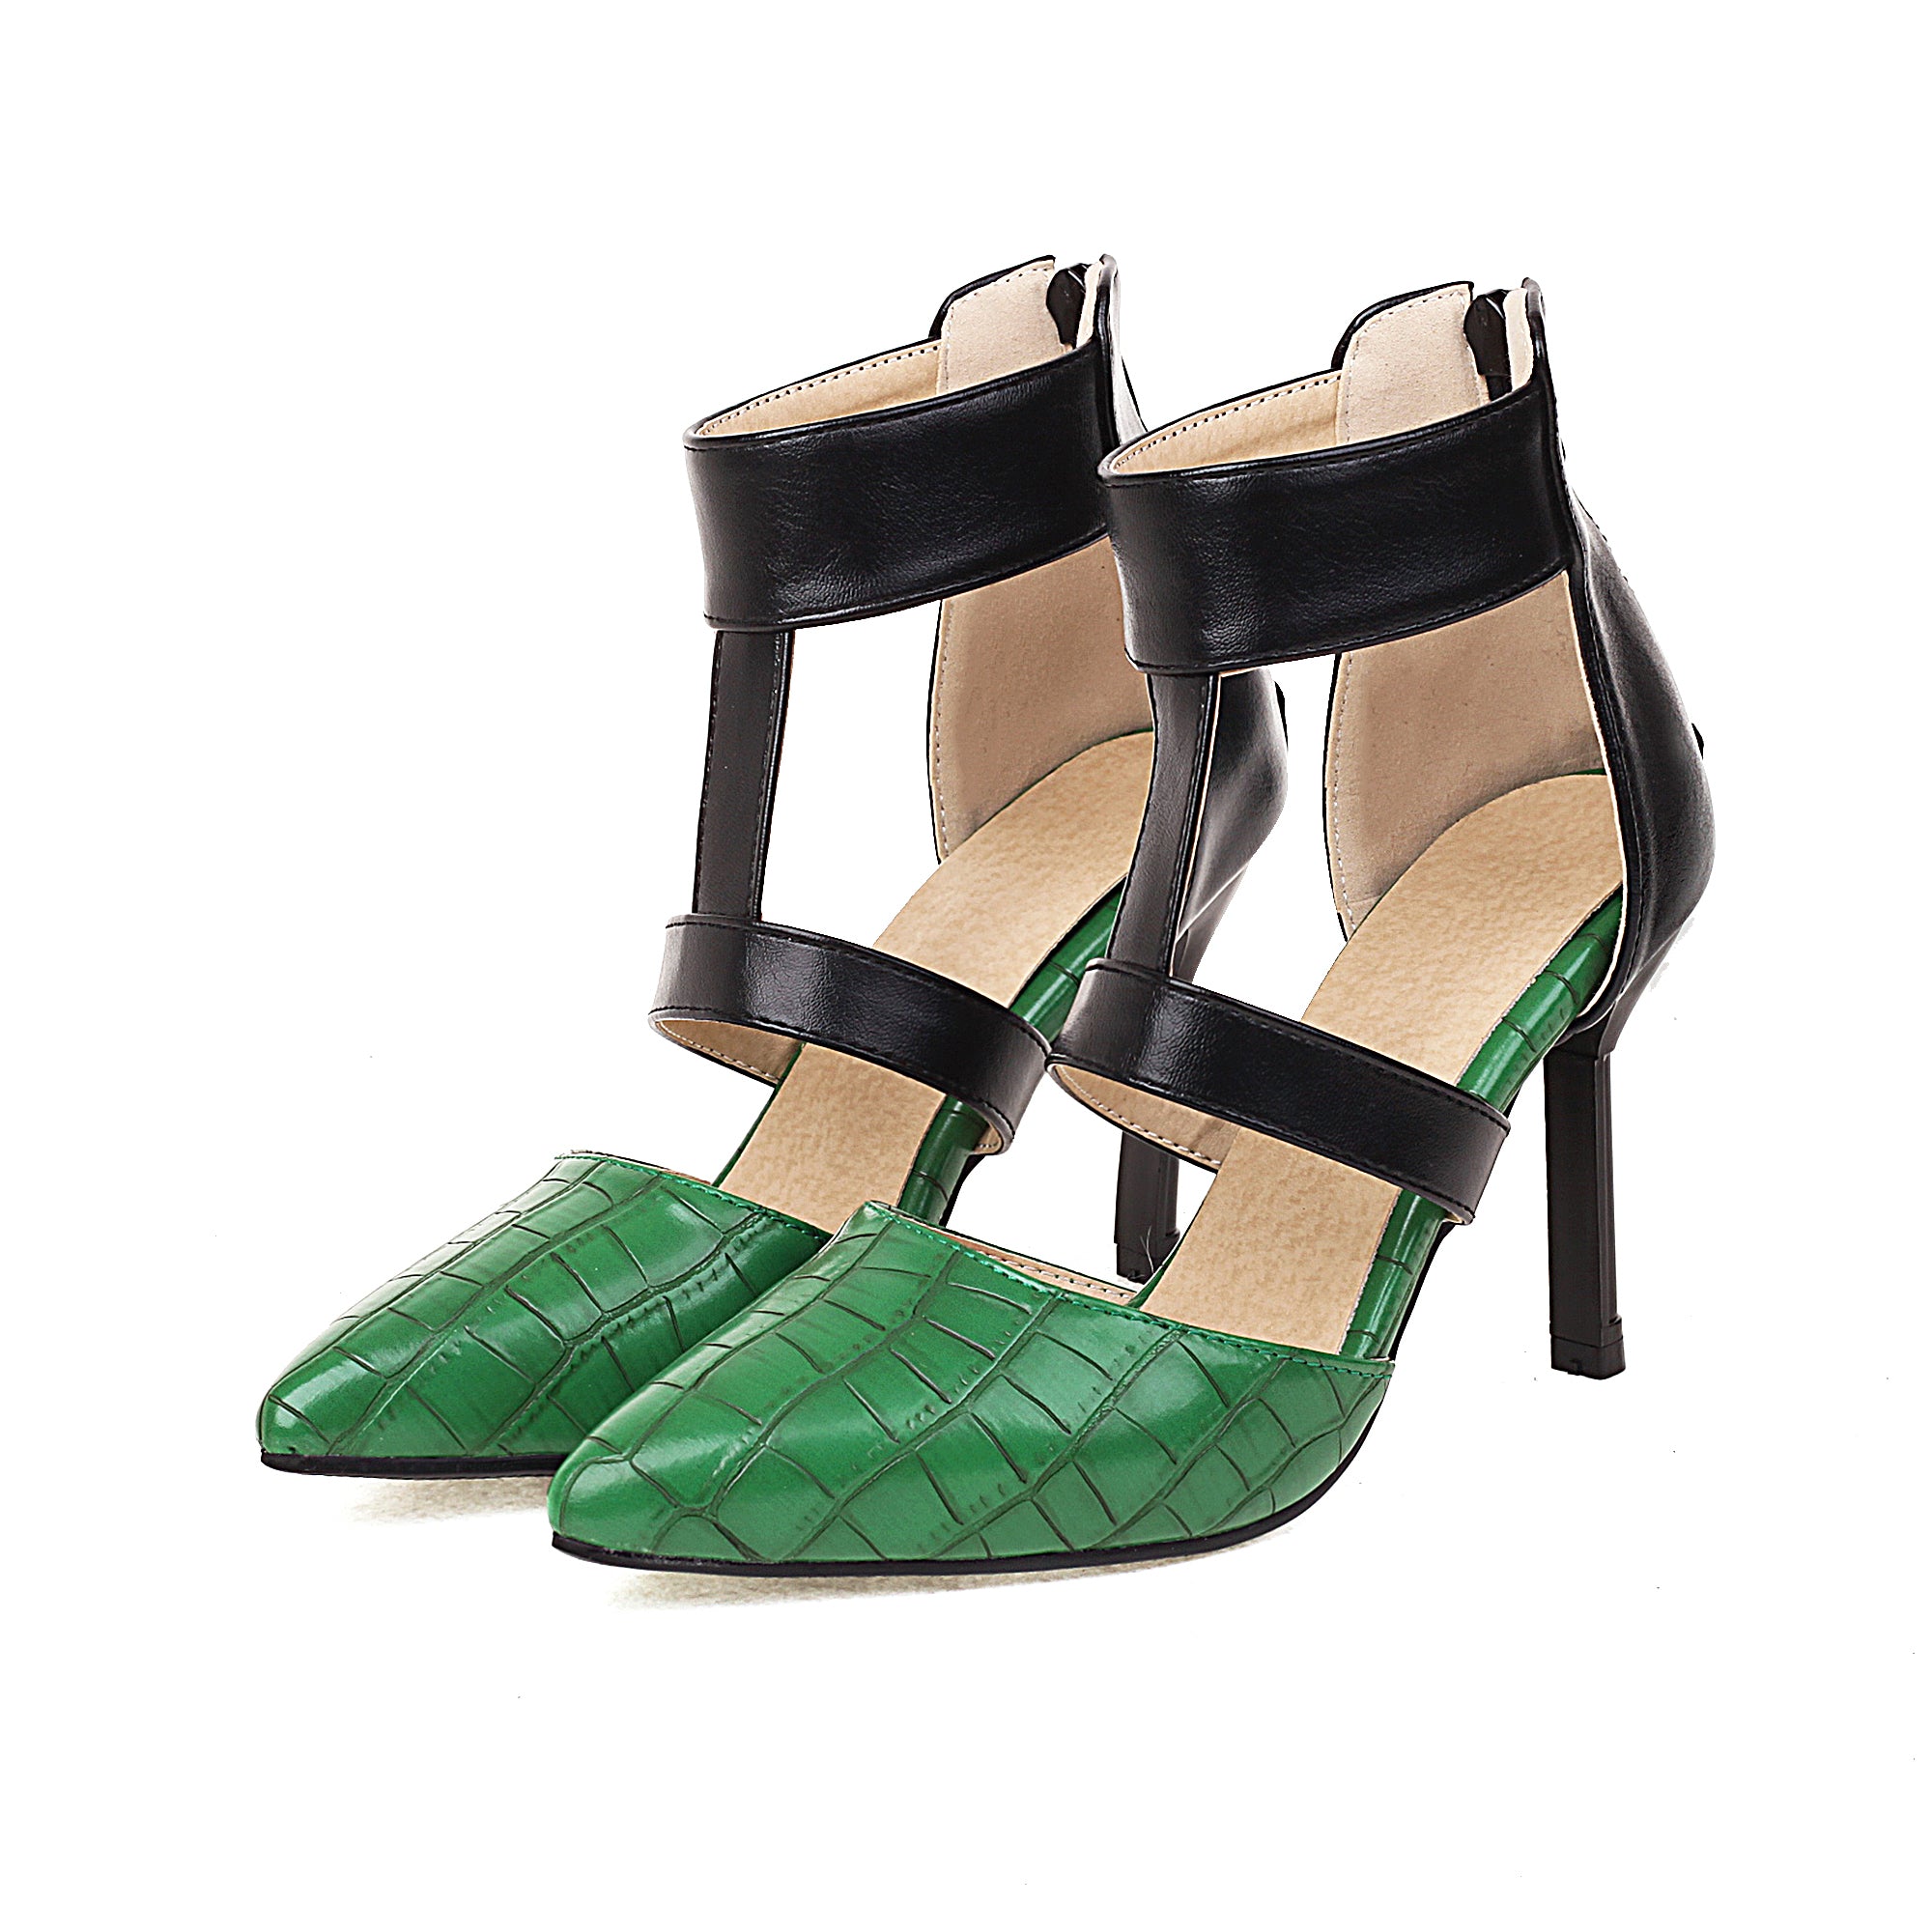 The Bigsizeheels T Strap Pointed Toe_Stiletto Heels Sandals - Green best oversized women heels from bigsizeheels